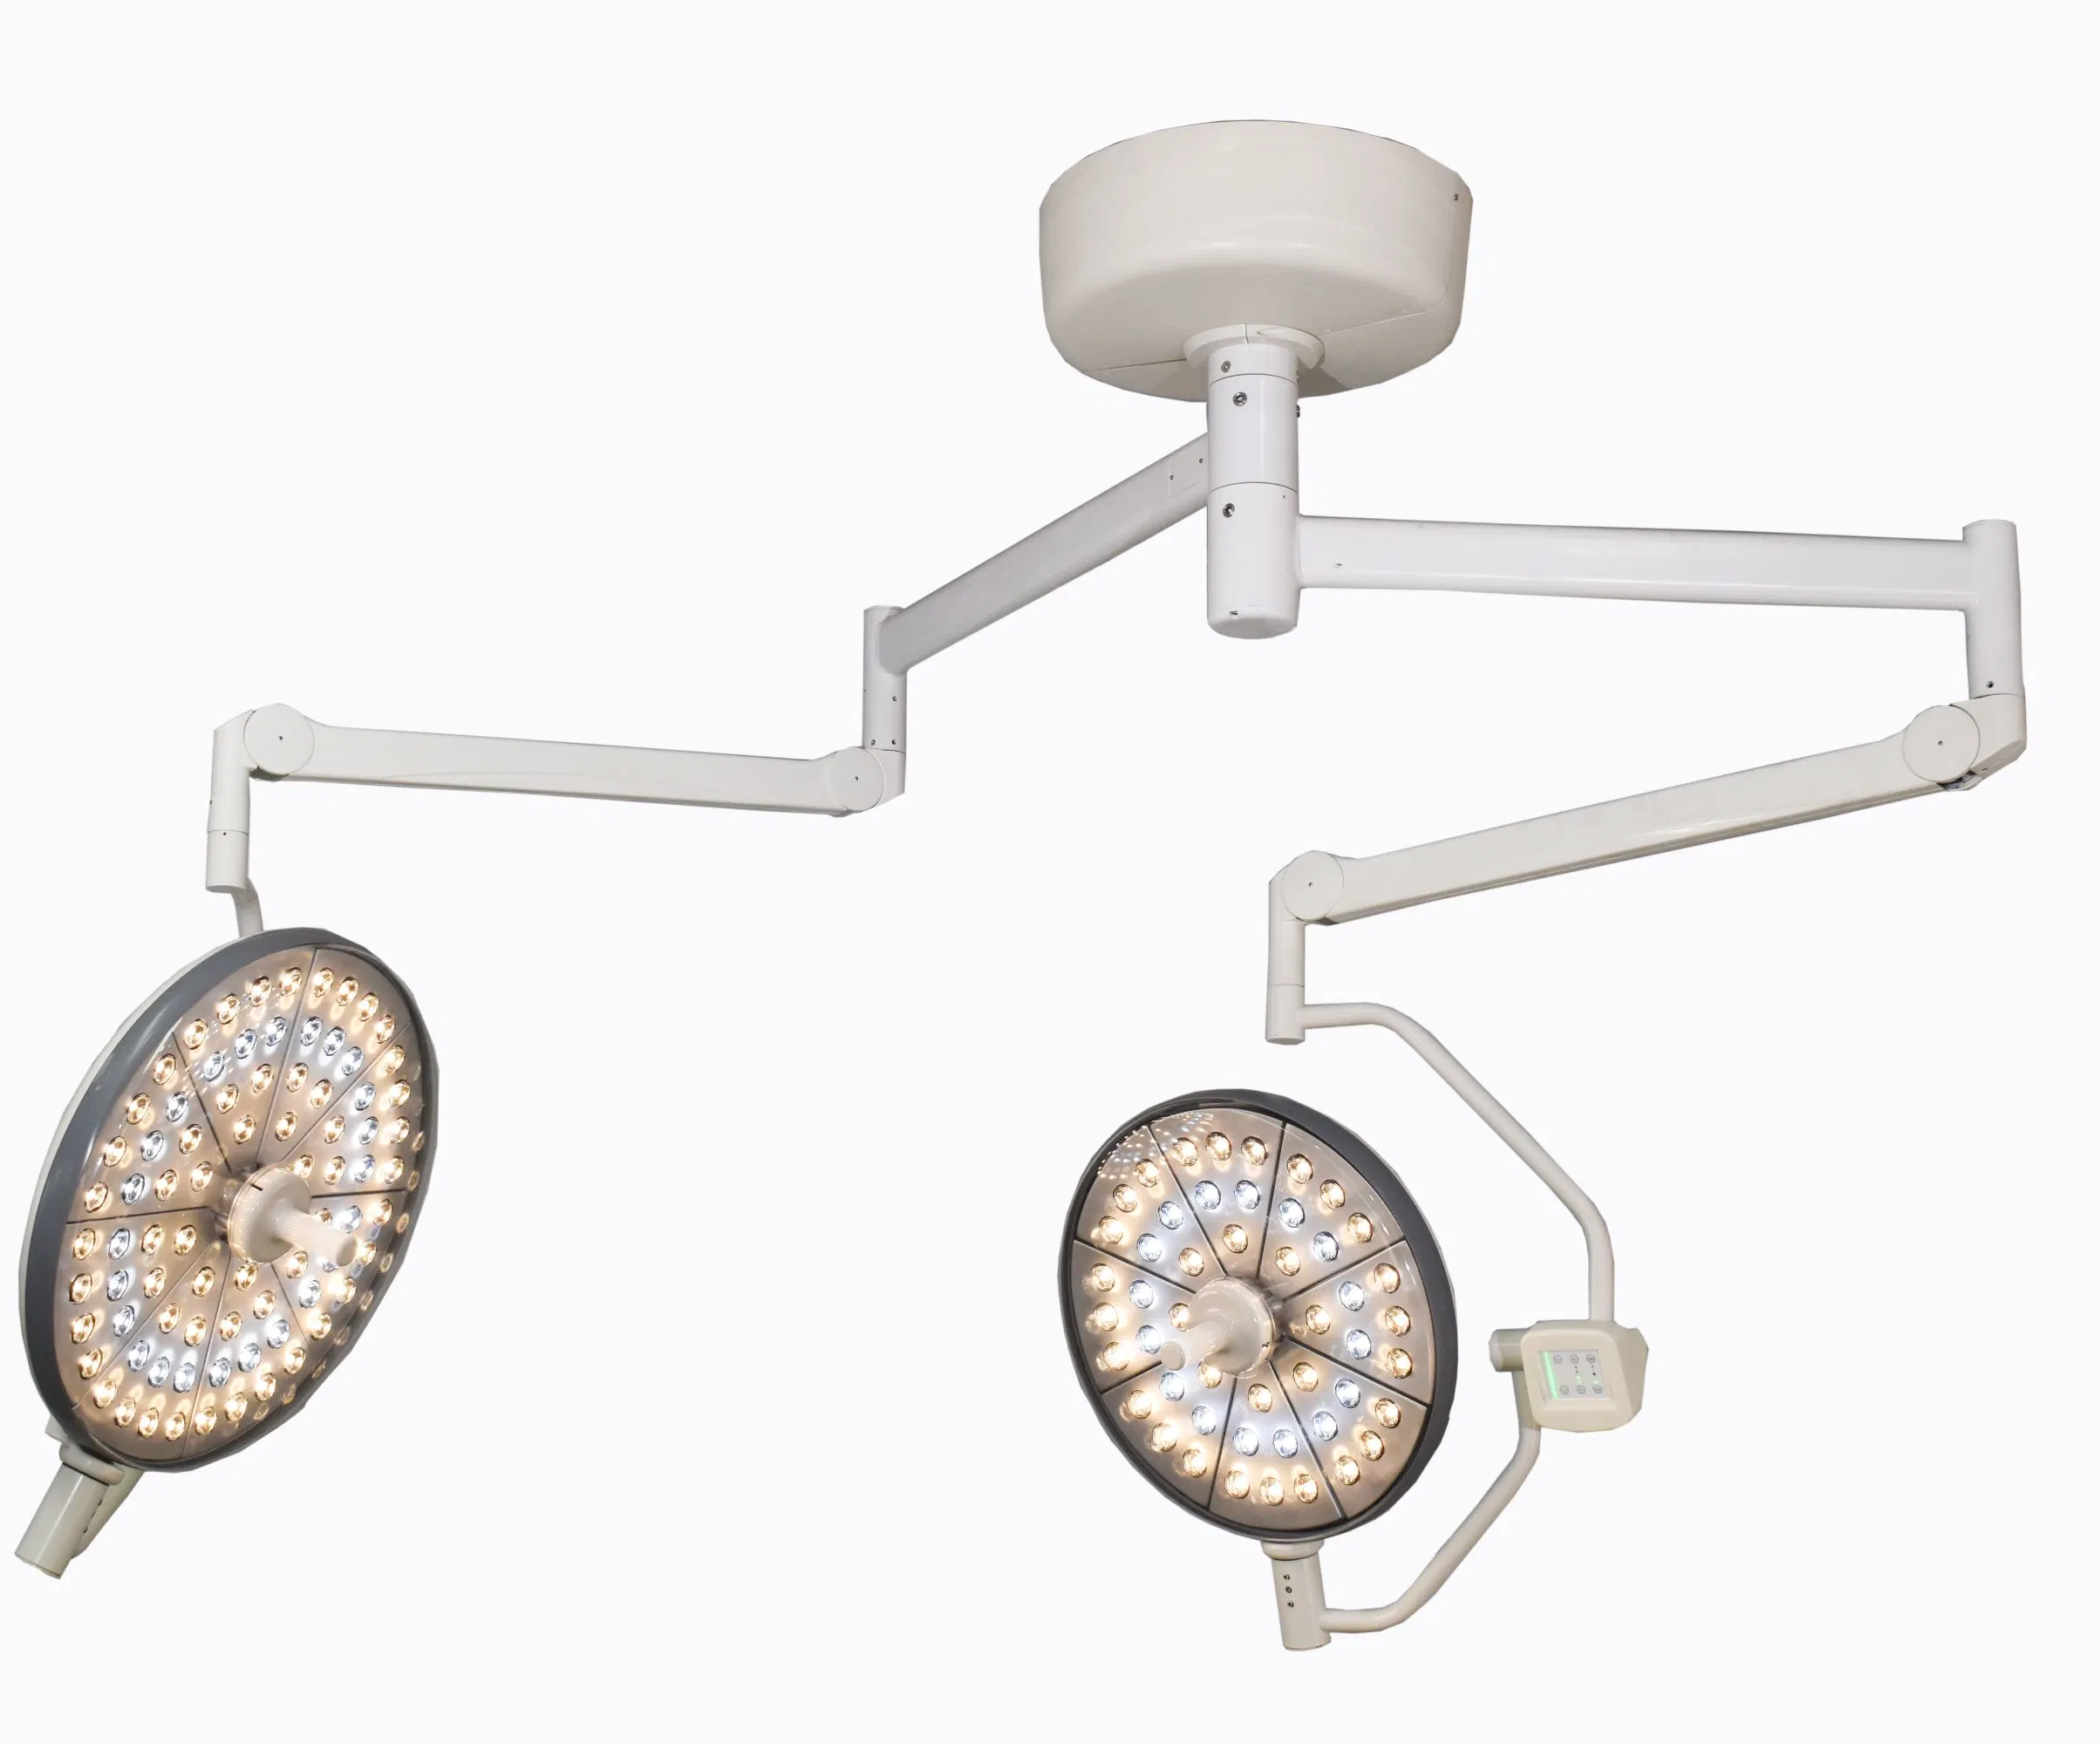 Medizinische Geräte Krankenhaus Verwendung Doppelköpfe LED-Betrieb Beleuchtung Decke Operationslampe Operationslampe